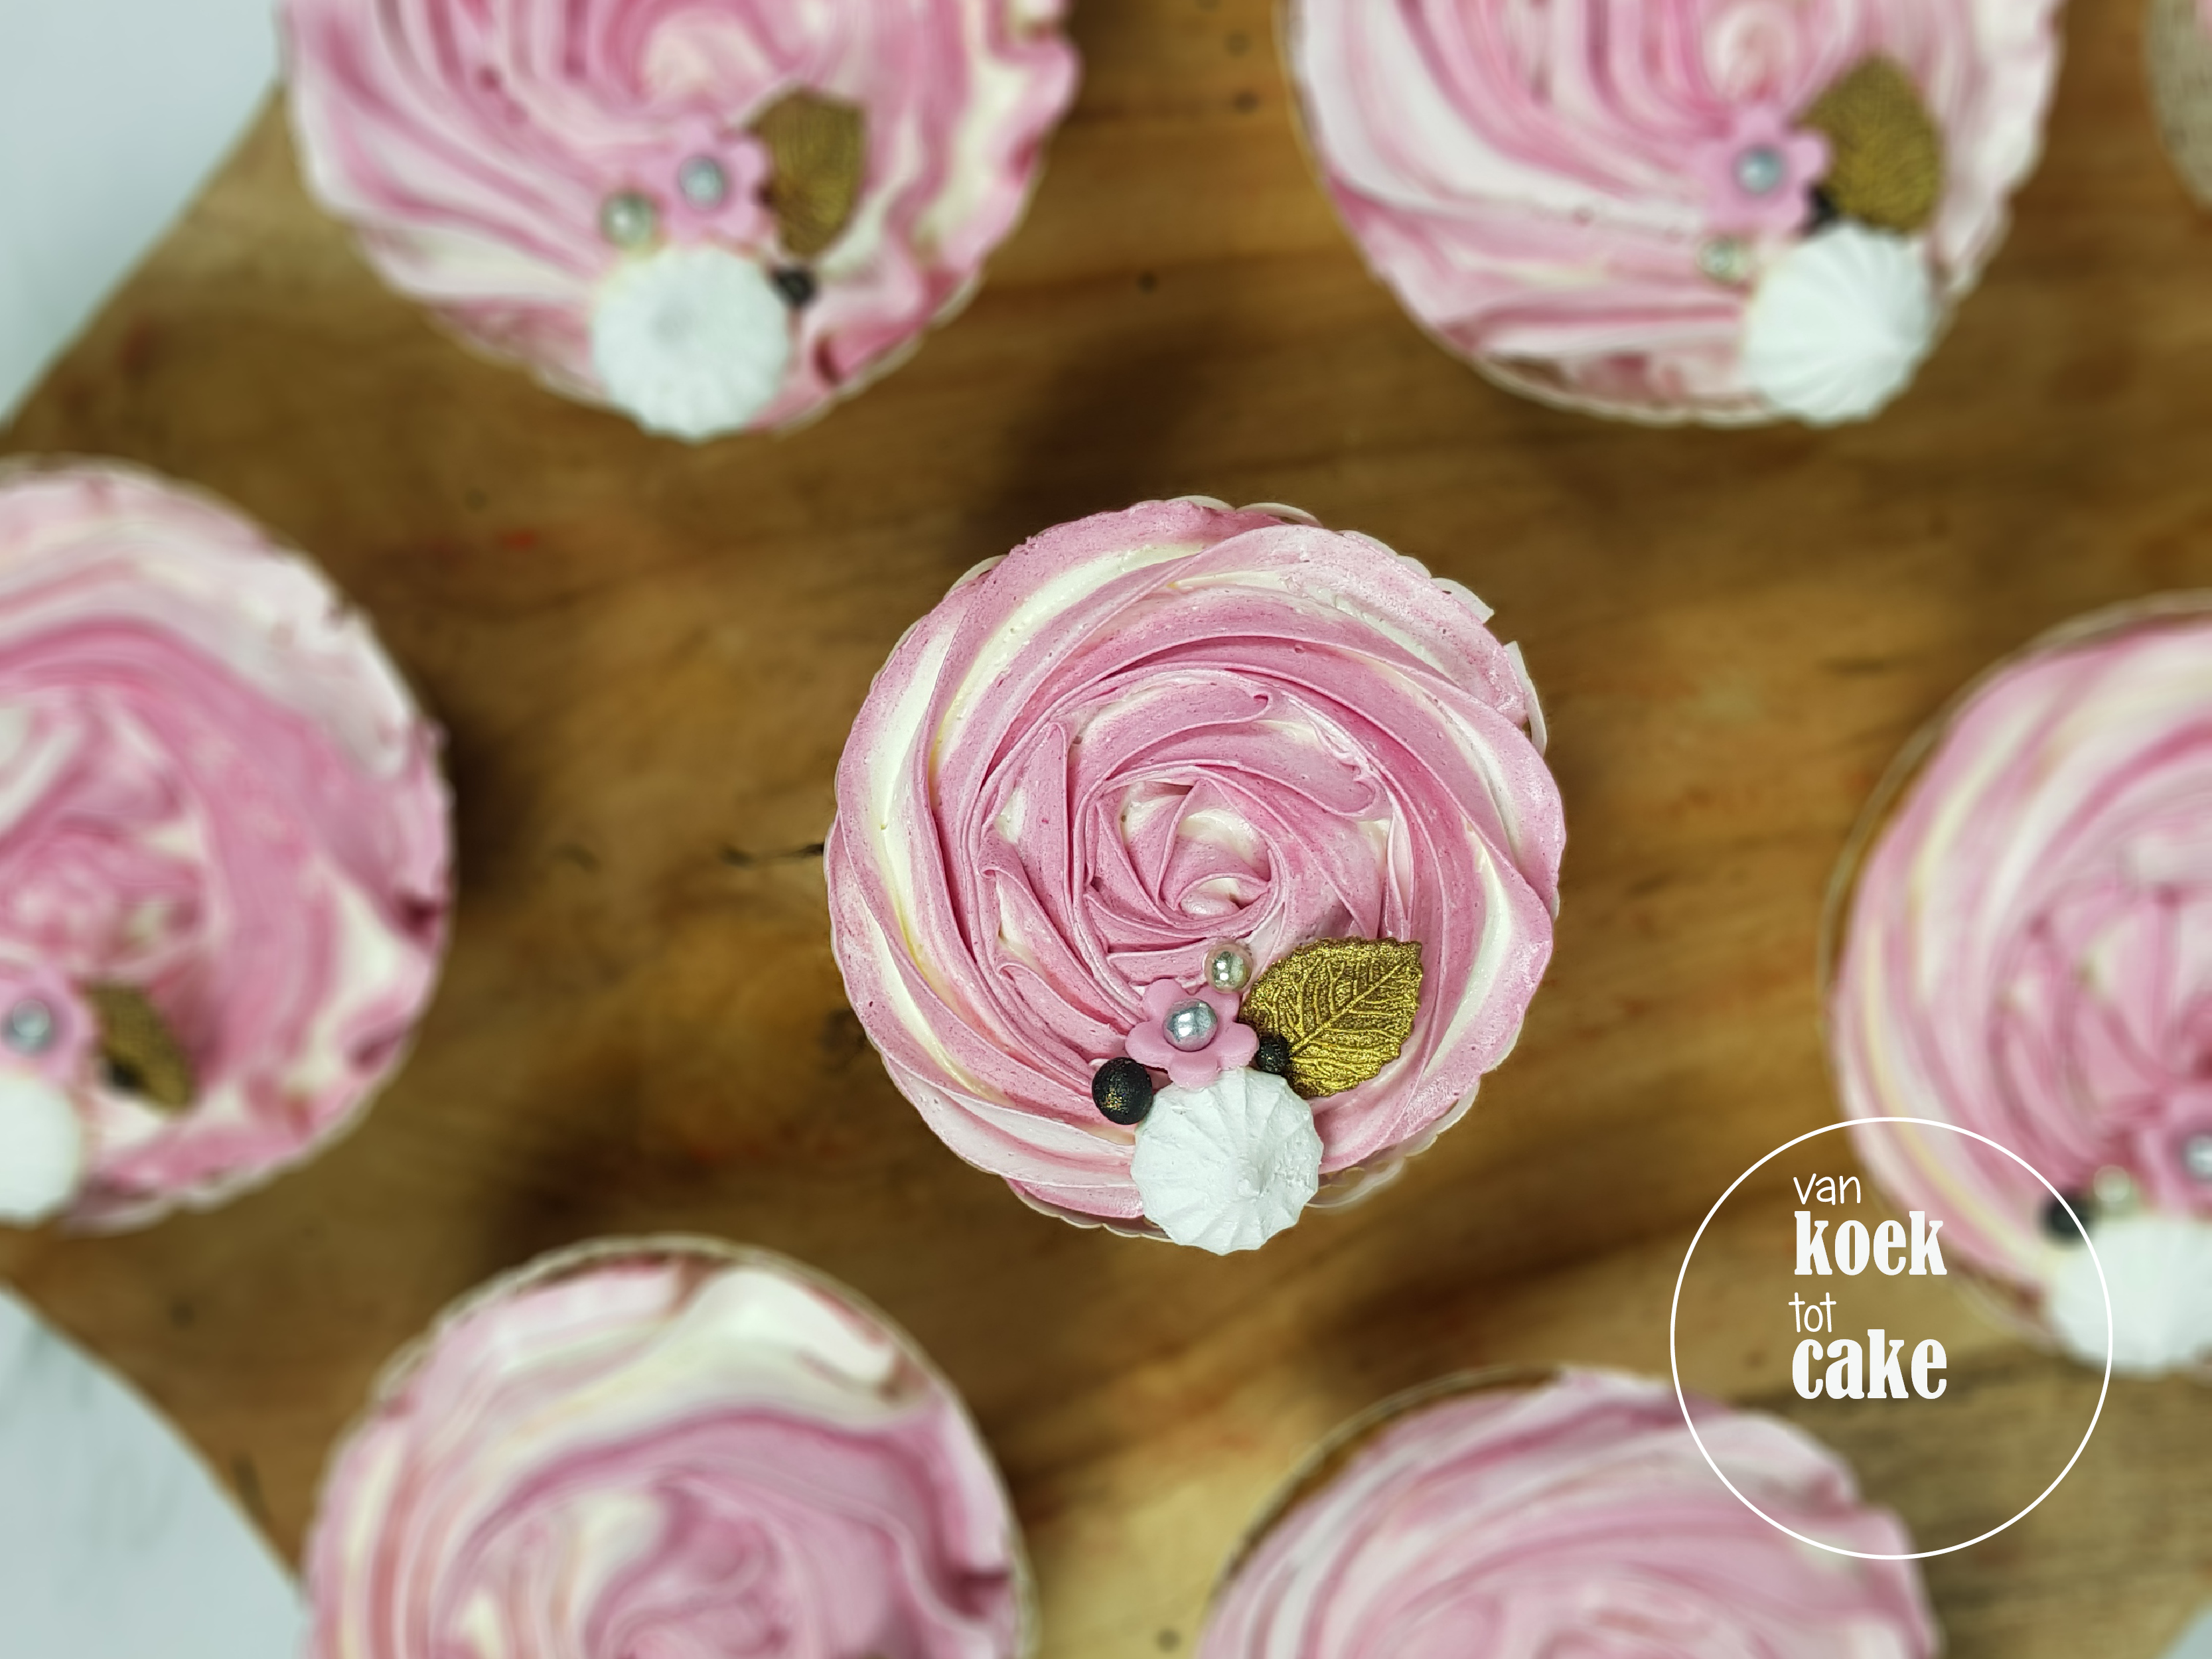 Cupcakes met roze toef zilver goud zwart en wit - bestellen Vlissingen Middelburg Oost-Souburg - van koek tot cake